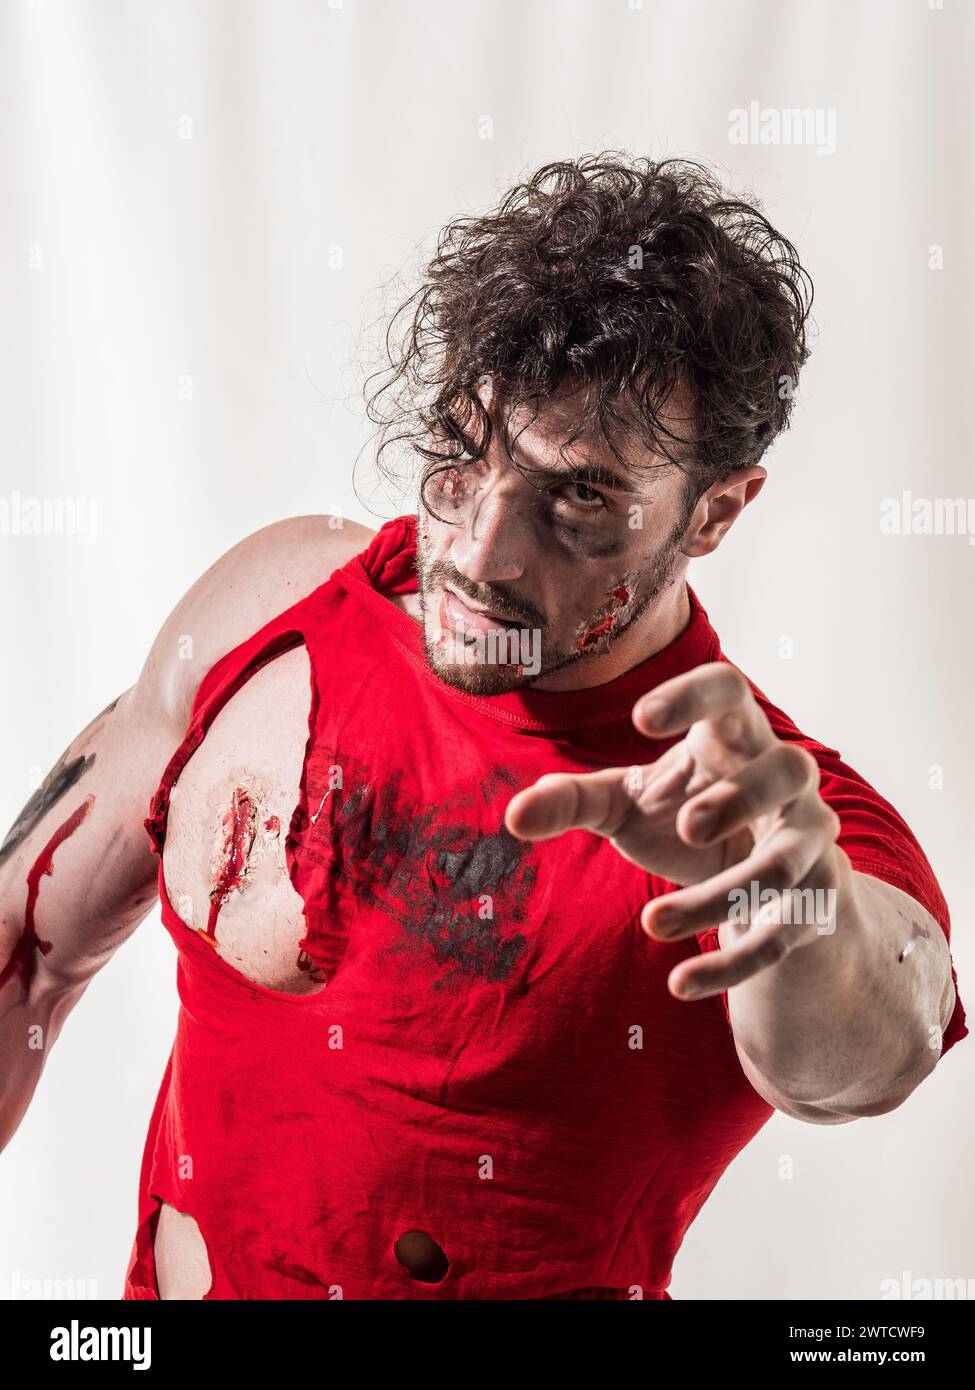 Un uomo zombie che indossa una camicia rossa viene mostrato con il sangue sparso su tutto il corpo. L'immagine cattura una scena di violenza o lesioni, mostrando la messa a fuoco automatica Foto Stock